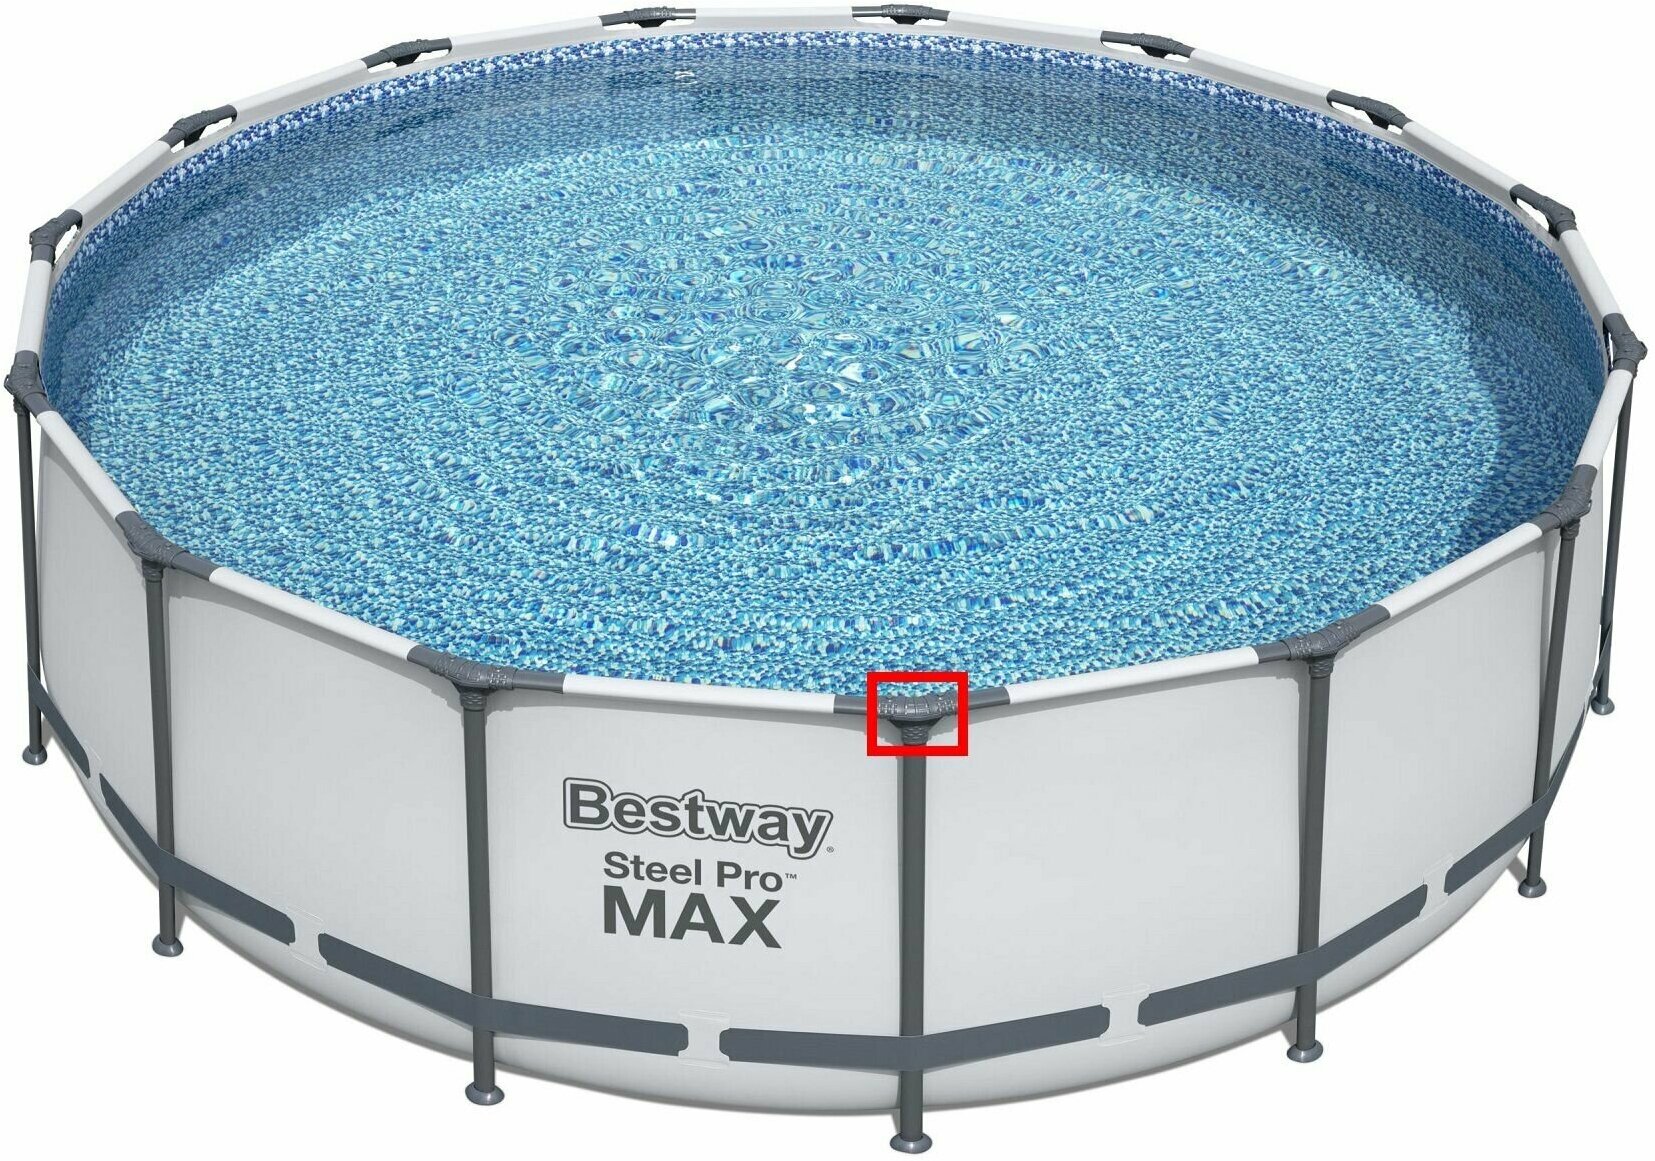 Т-образный соединитель - тройник P05445 BestWay, запчасть для круглых каркасного бассейна 457 на 122 см. Steel Pro Max Bestway - фотография № 4